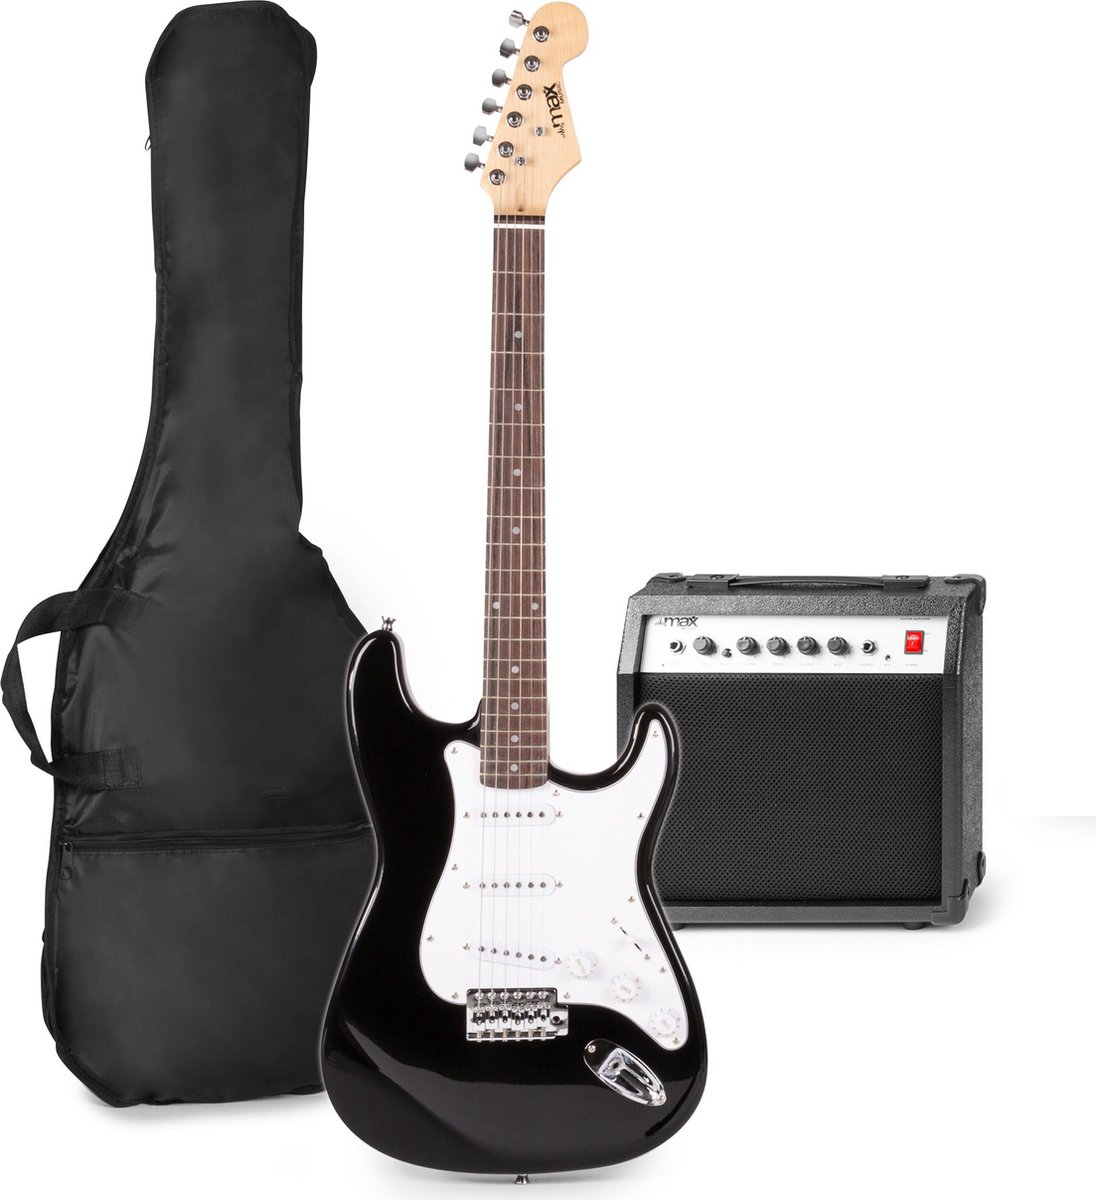 Elektrische gitaar met gitaar versterker - MAX Gigkit - Perfect voor beginners - incl. gitaar stemapparaat, gitaartas en plectrum - Zwart